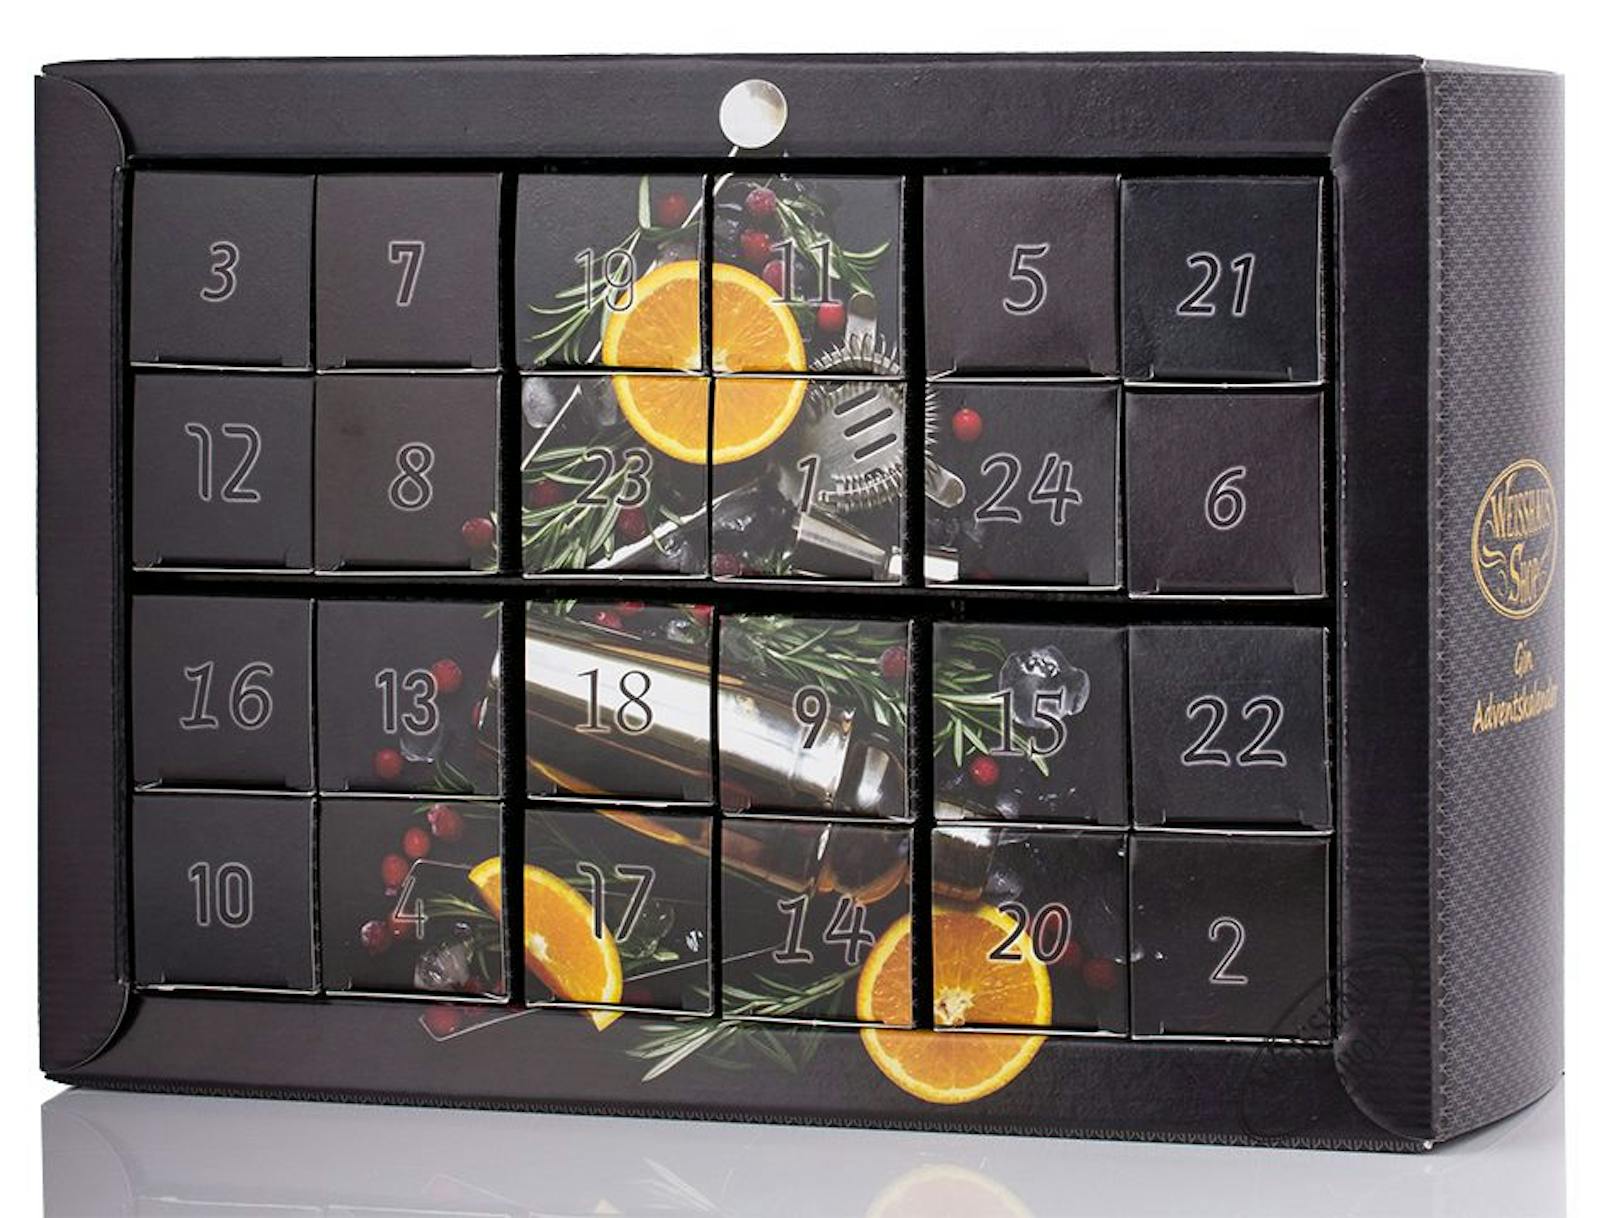 Einen&nbsp;<strong>Adventkalender voll Gin </strong>gibt es von Weisshaus. Er beinhaltet 24 Miniaturen von Premium-Gins, beispielsweise von Monkey 47 oder Rick Gin. Um 149,90 Euro unter&nbsp;<a href="https://www.weisshaus.at/details/weisshaus-gin-adventskalender-24-gin-miniaturen?gclid=CjwKCAiA2O39BRBjEiwApB2IkgIEdTMqSrT2KOJRO3HquqQbRlbMdea6yreBabaN3_lEjqCAGpUWzRoCIX0QAvD_BwE">weisshaus.at</a>